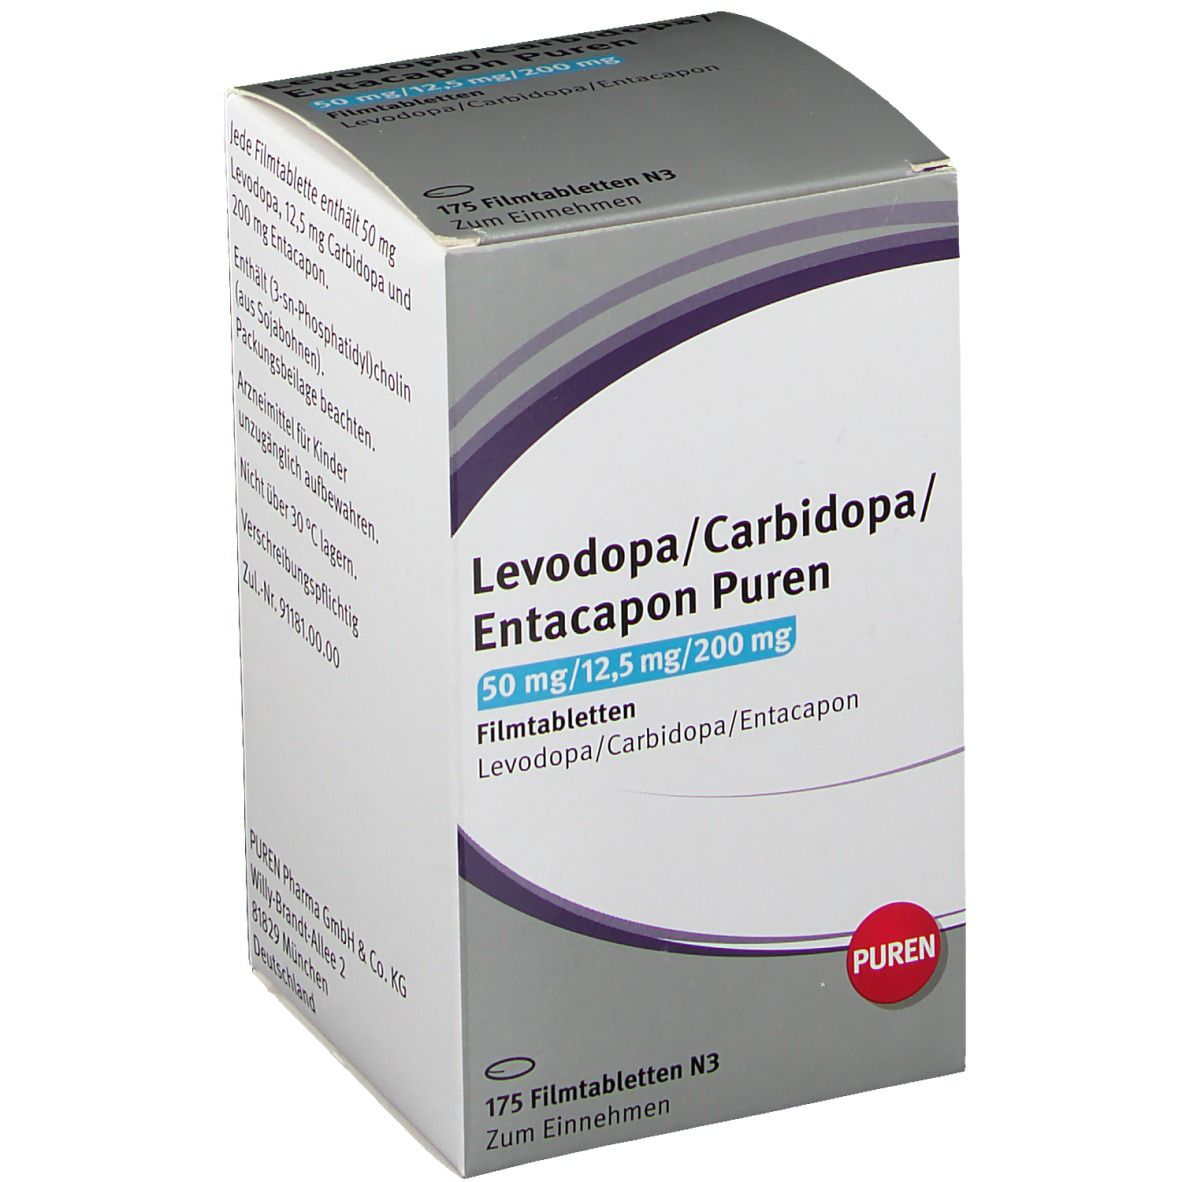 Levodopa/Carbidopa/Entacapon PUREN 50/12,5/200